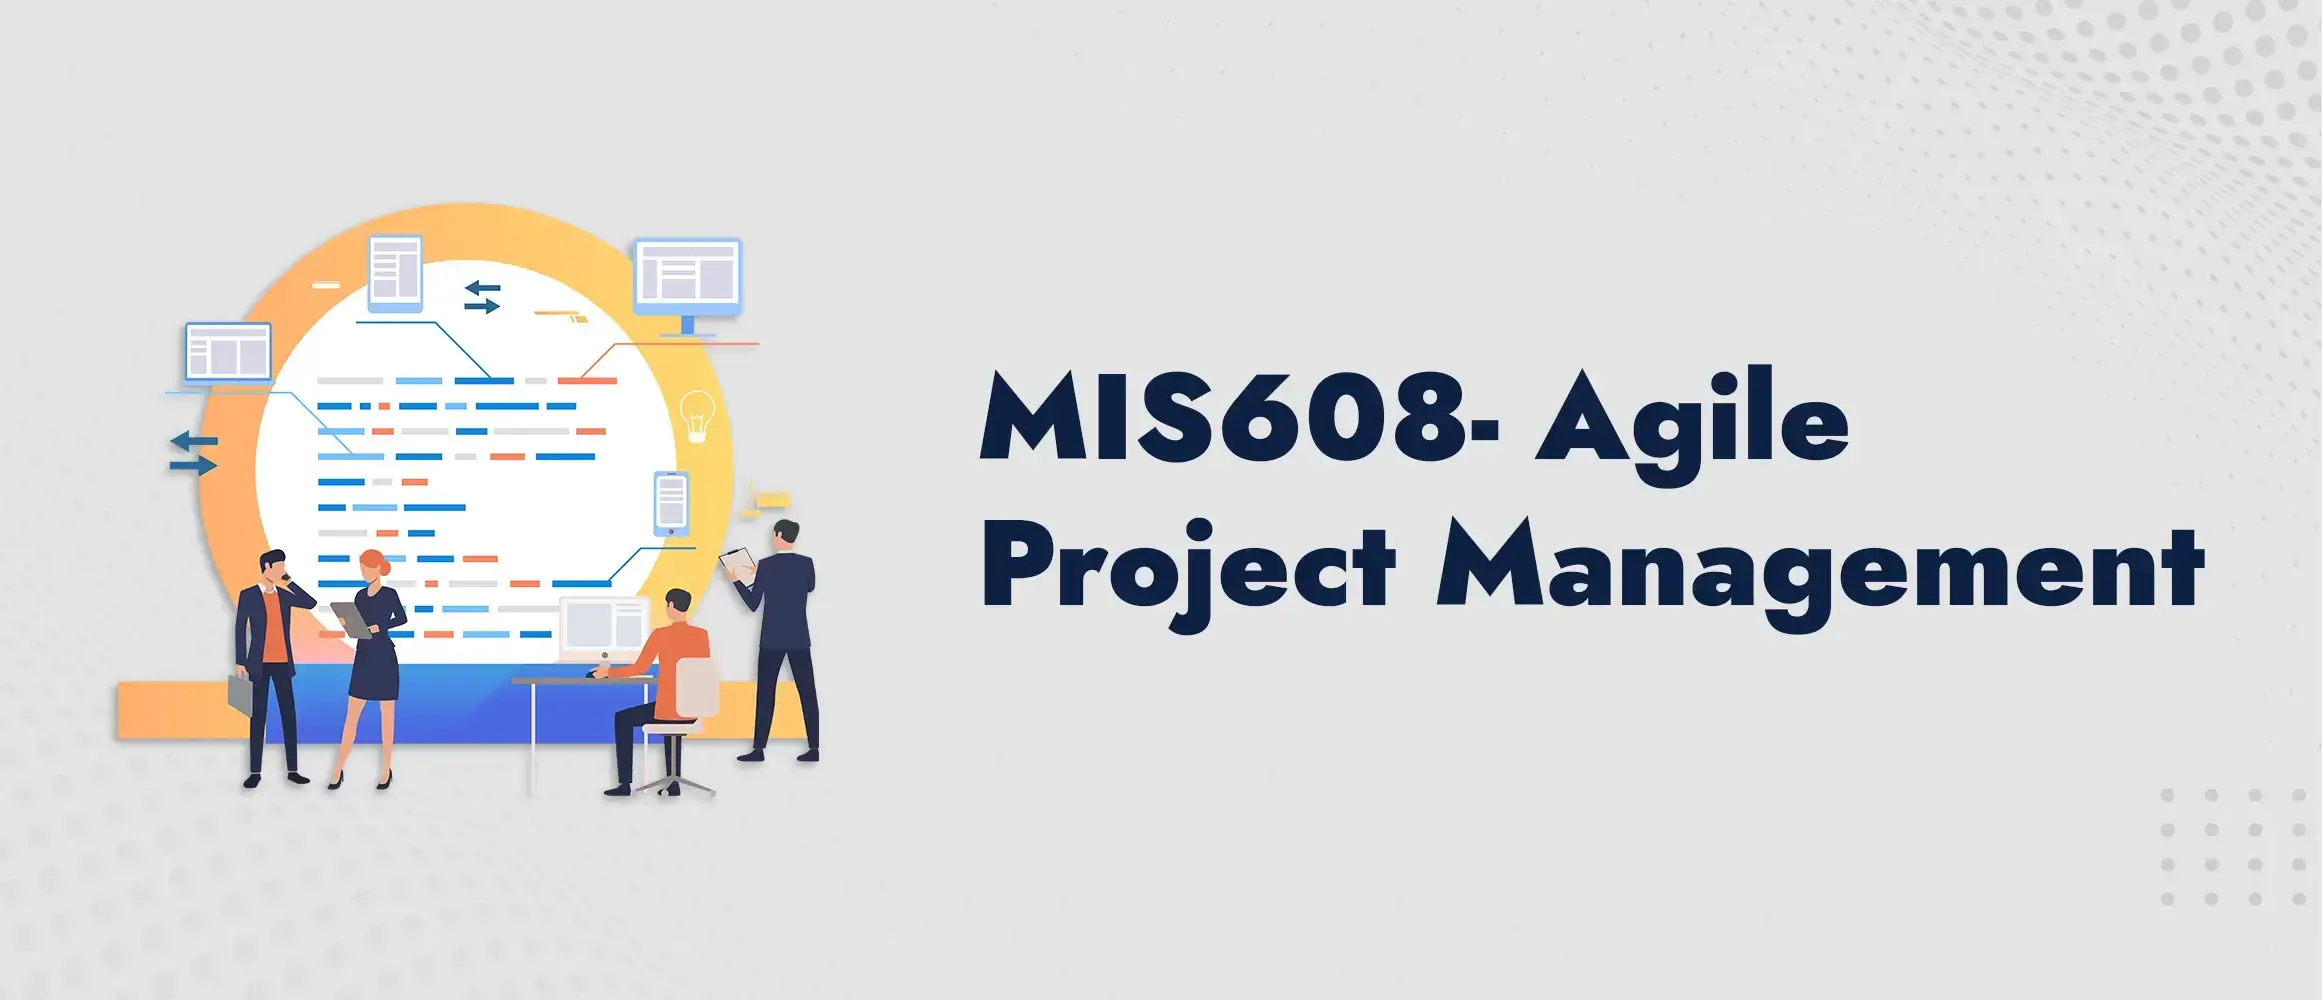 MIS608 Agile Project Management